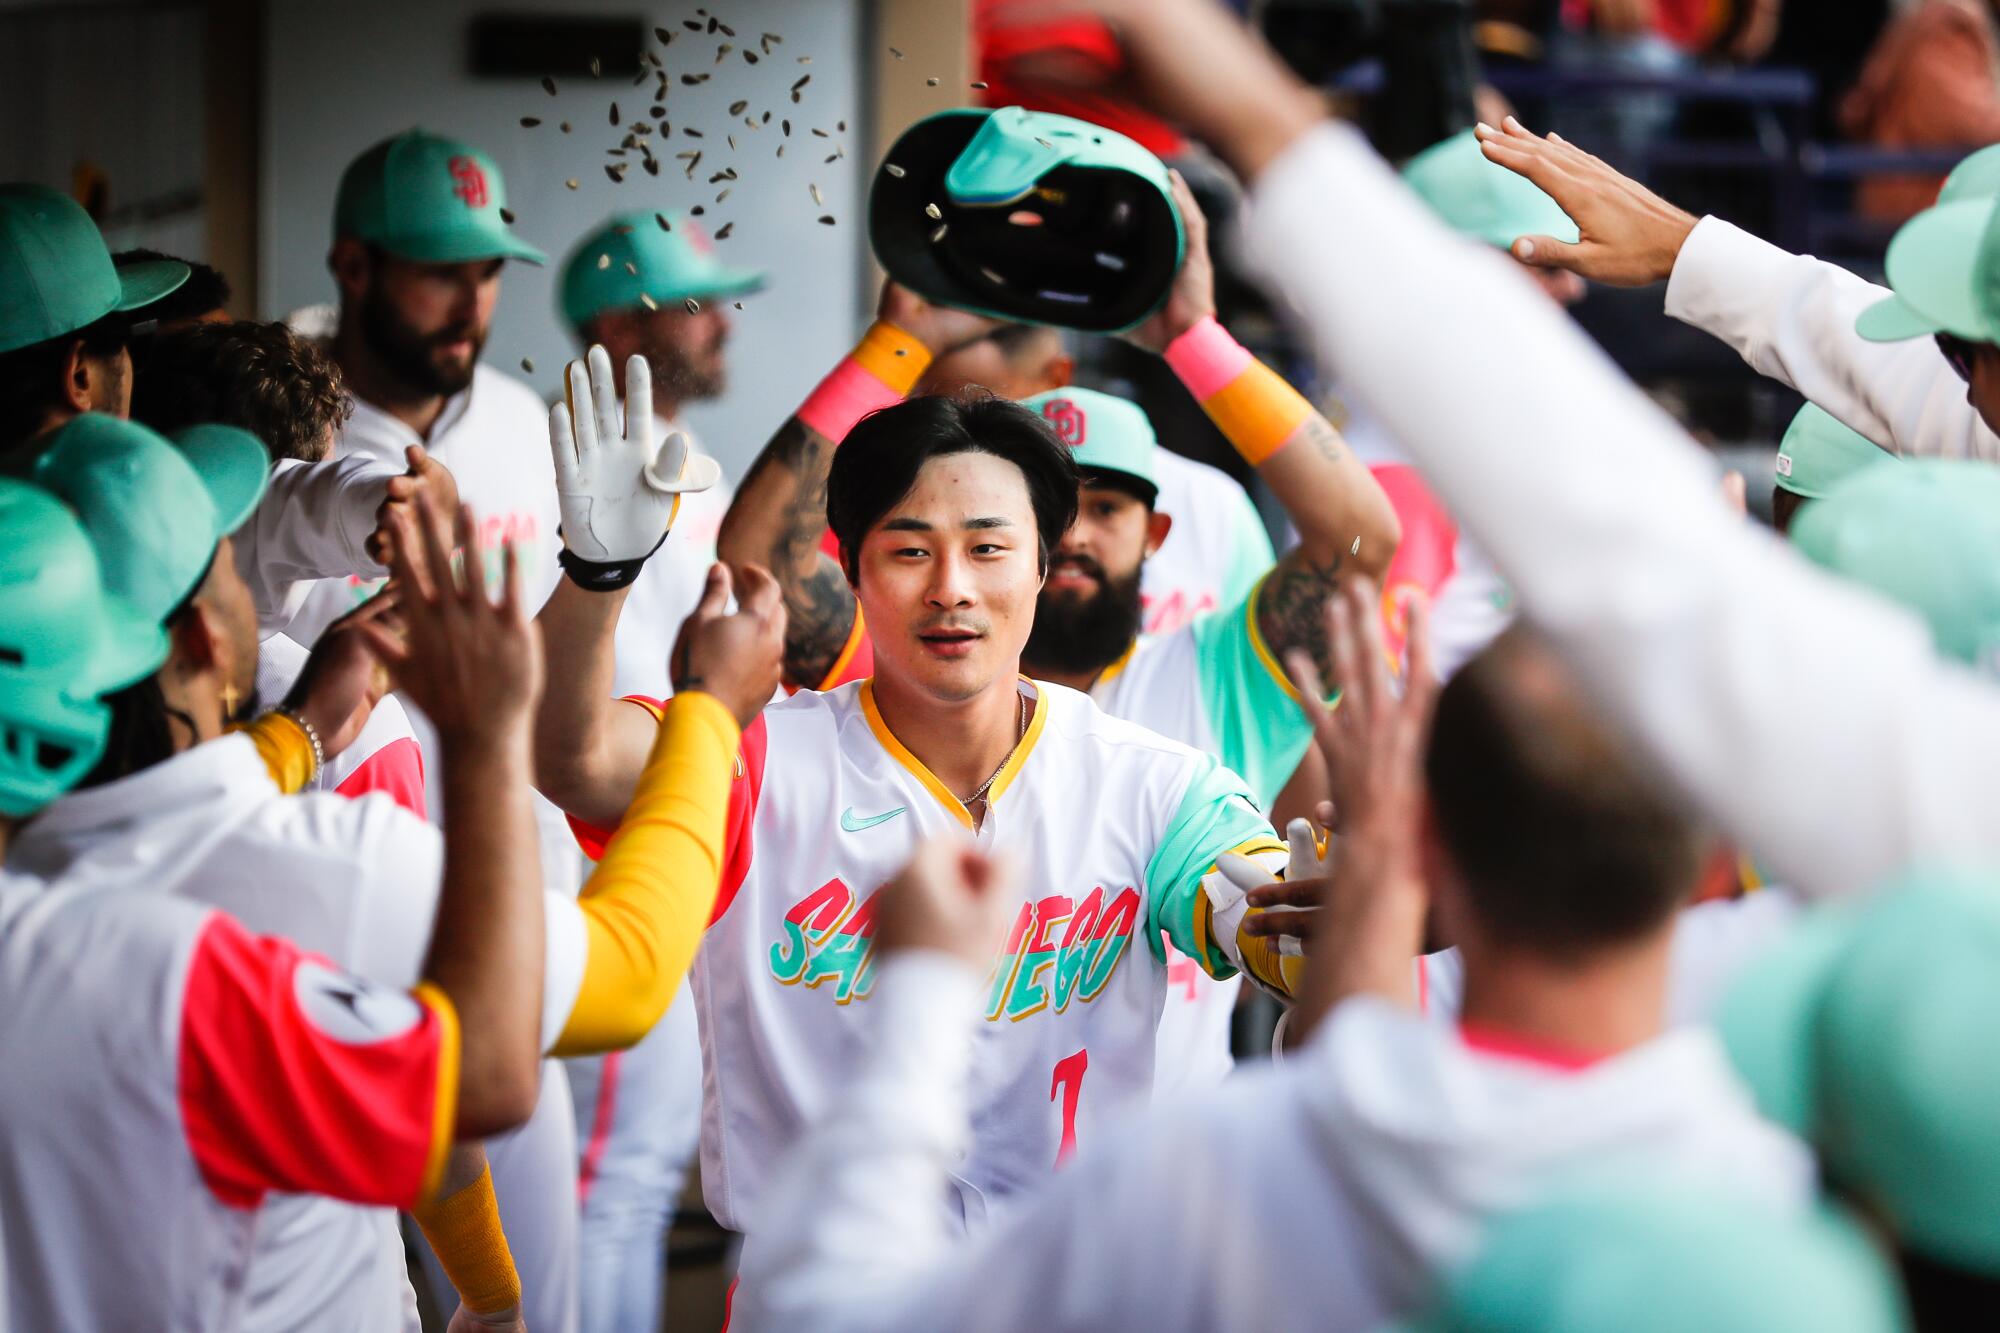 Ha-Seong Kim - MLB Second base - News, Stats, Bio and more - The Athletic